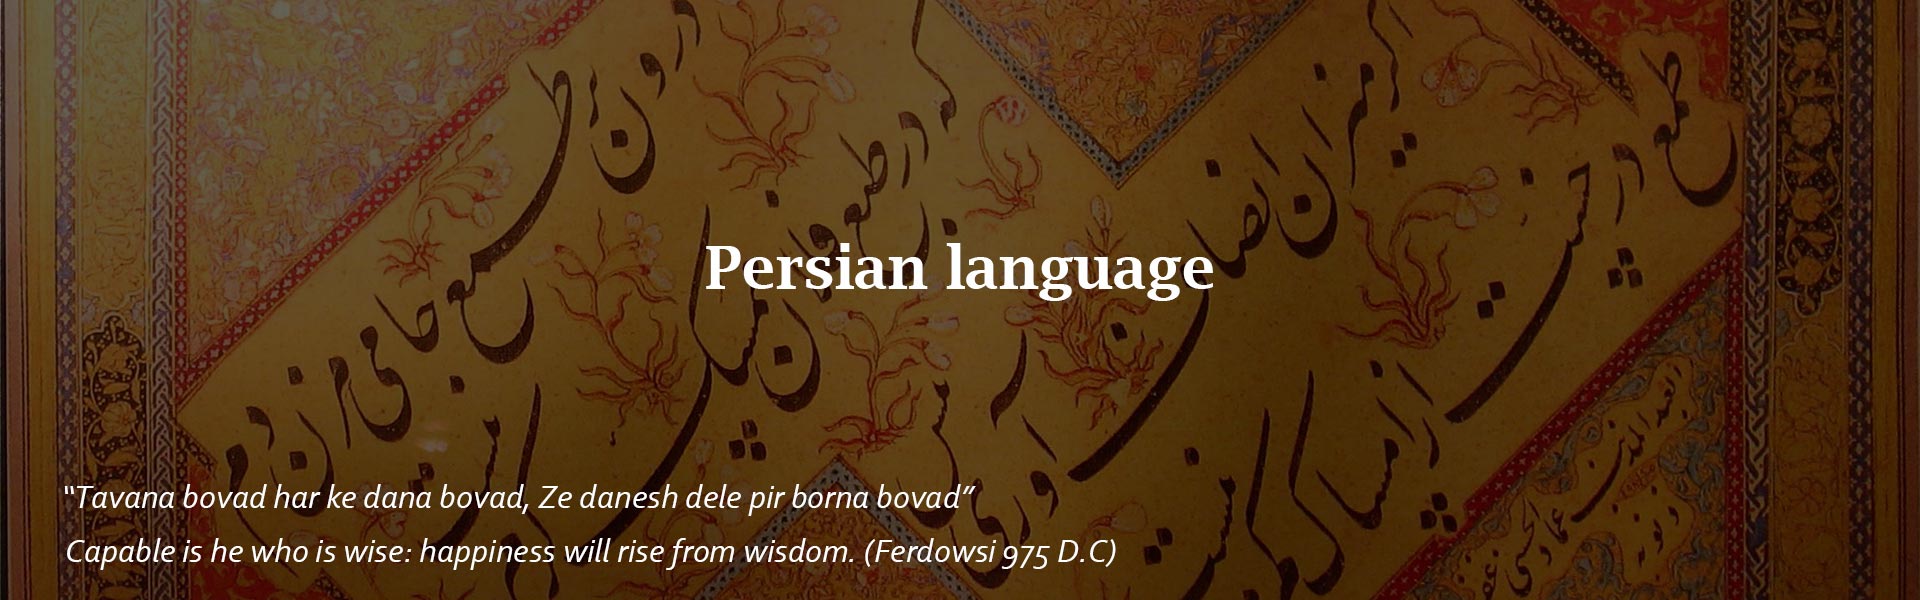 Persian-language-alif pisa